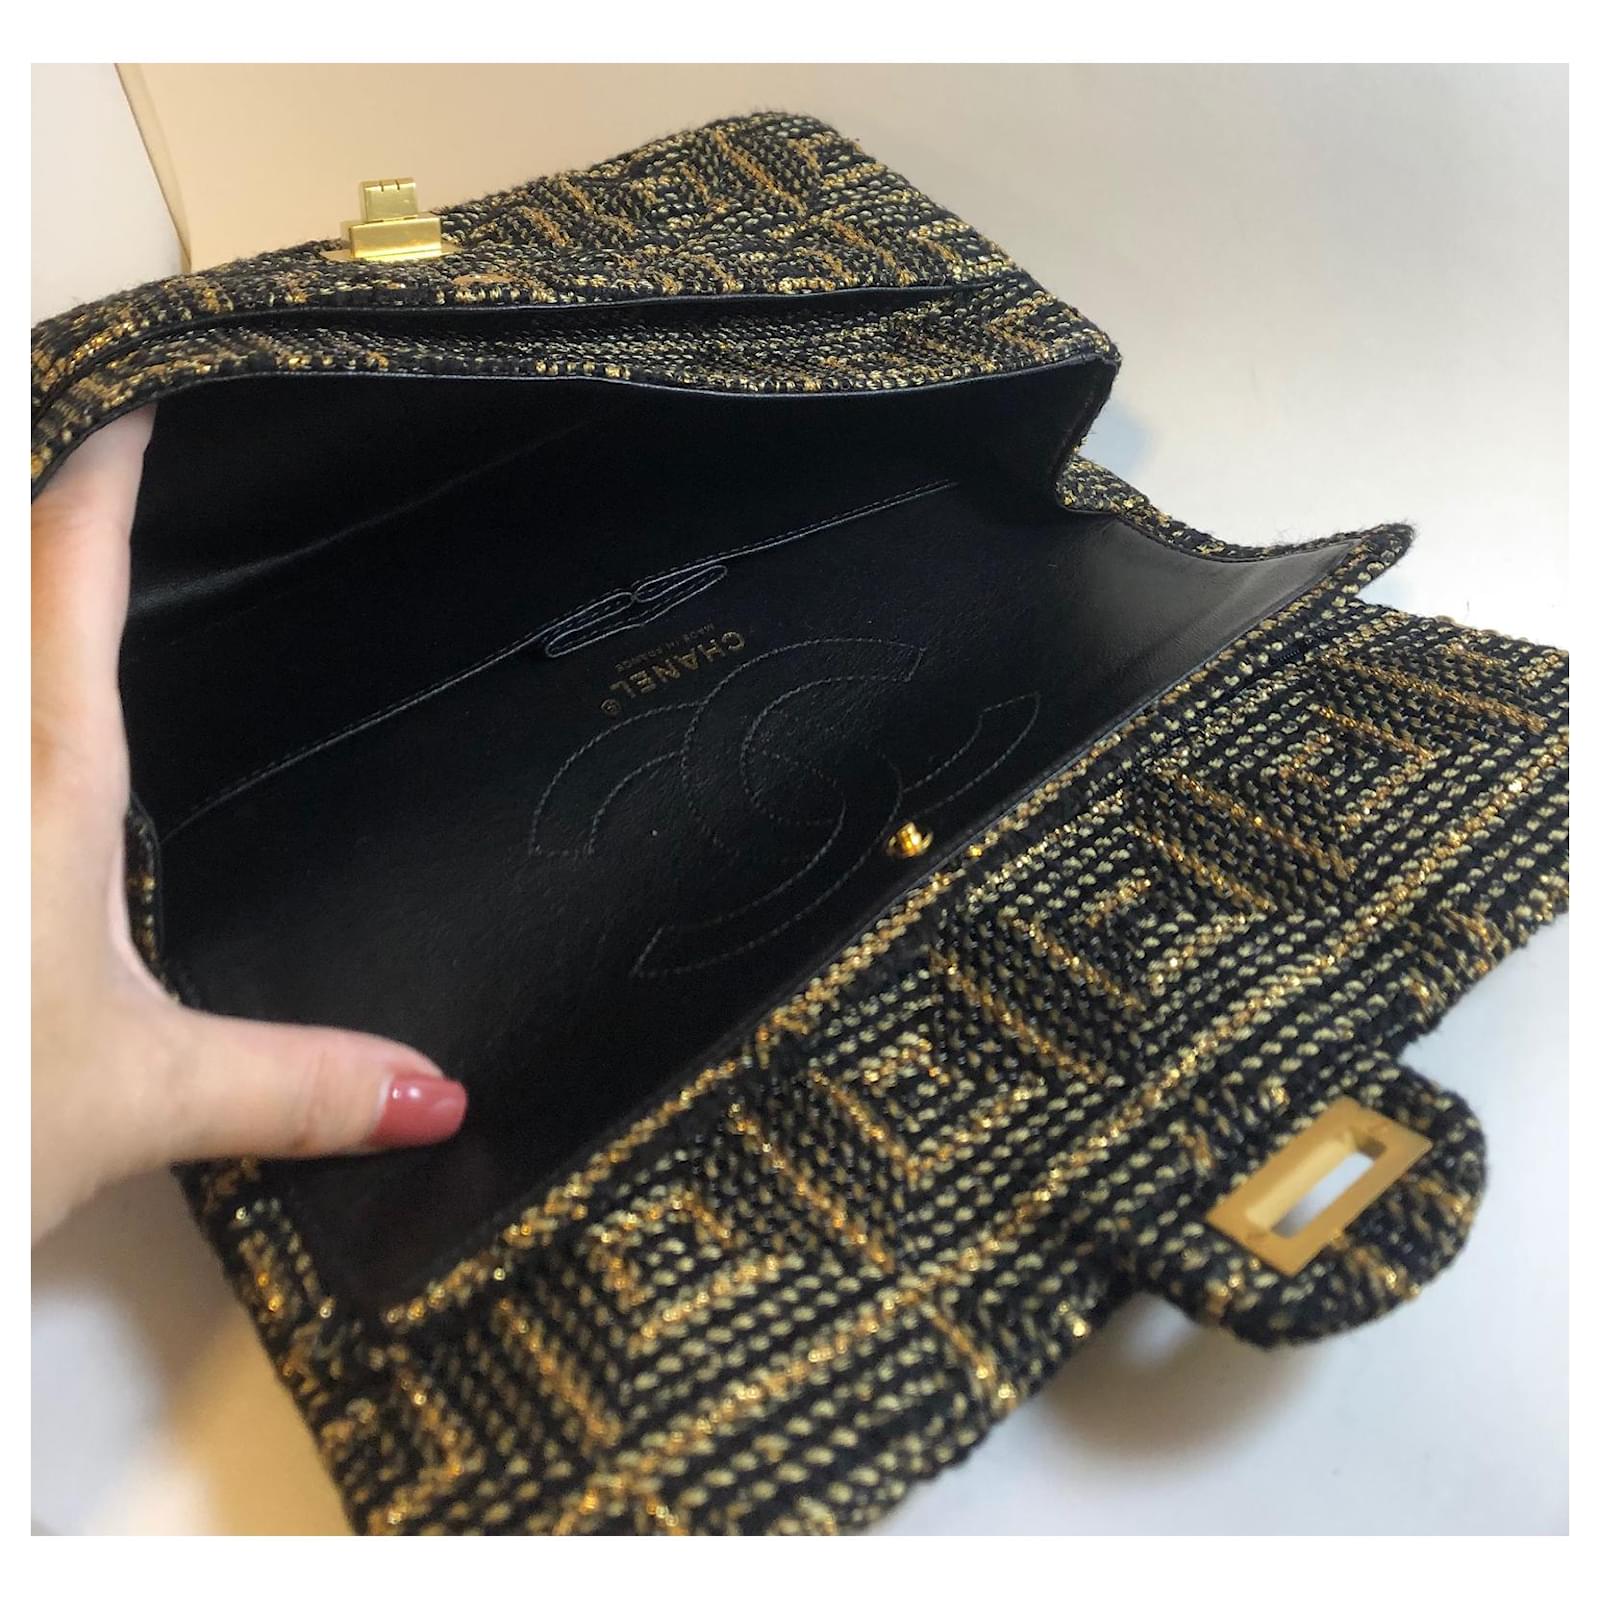 Vintage Chanel black 2.55 double flap shoulder bag. Paris limited edition.